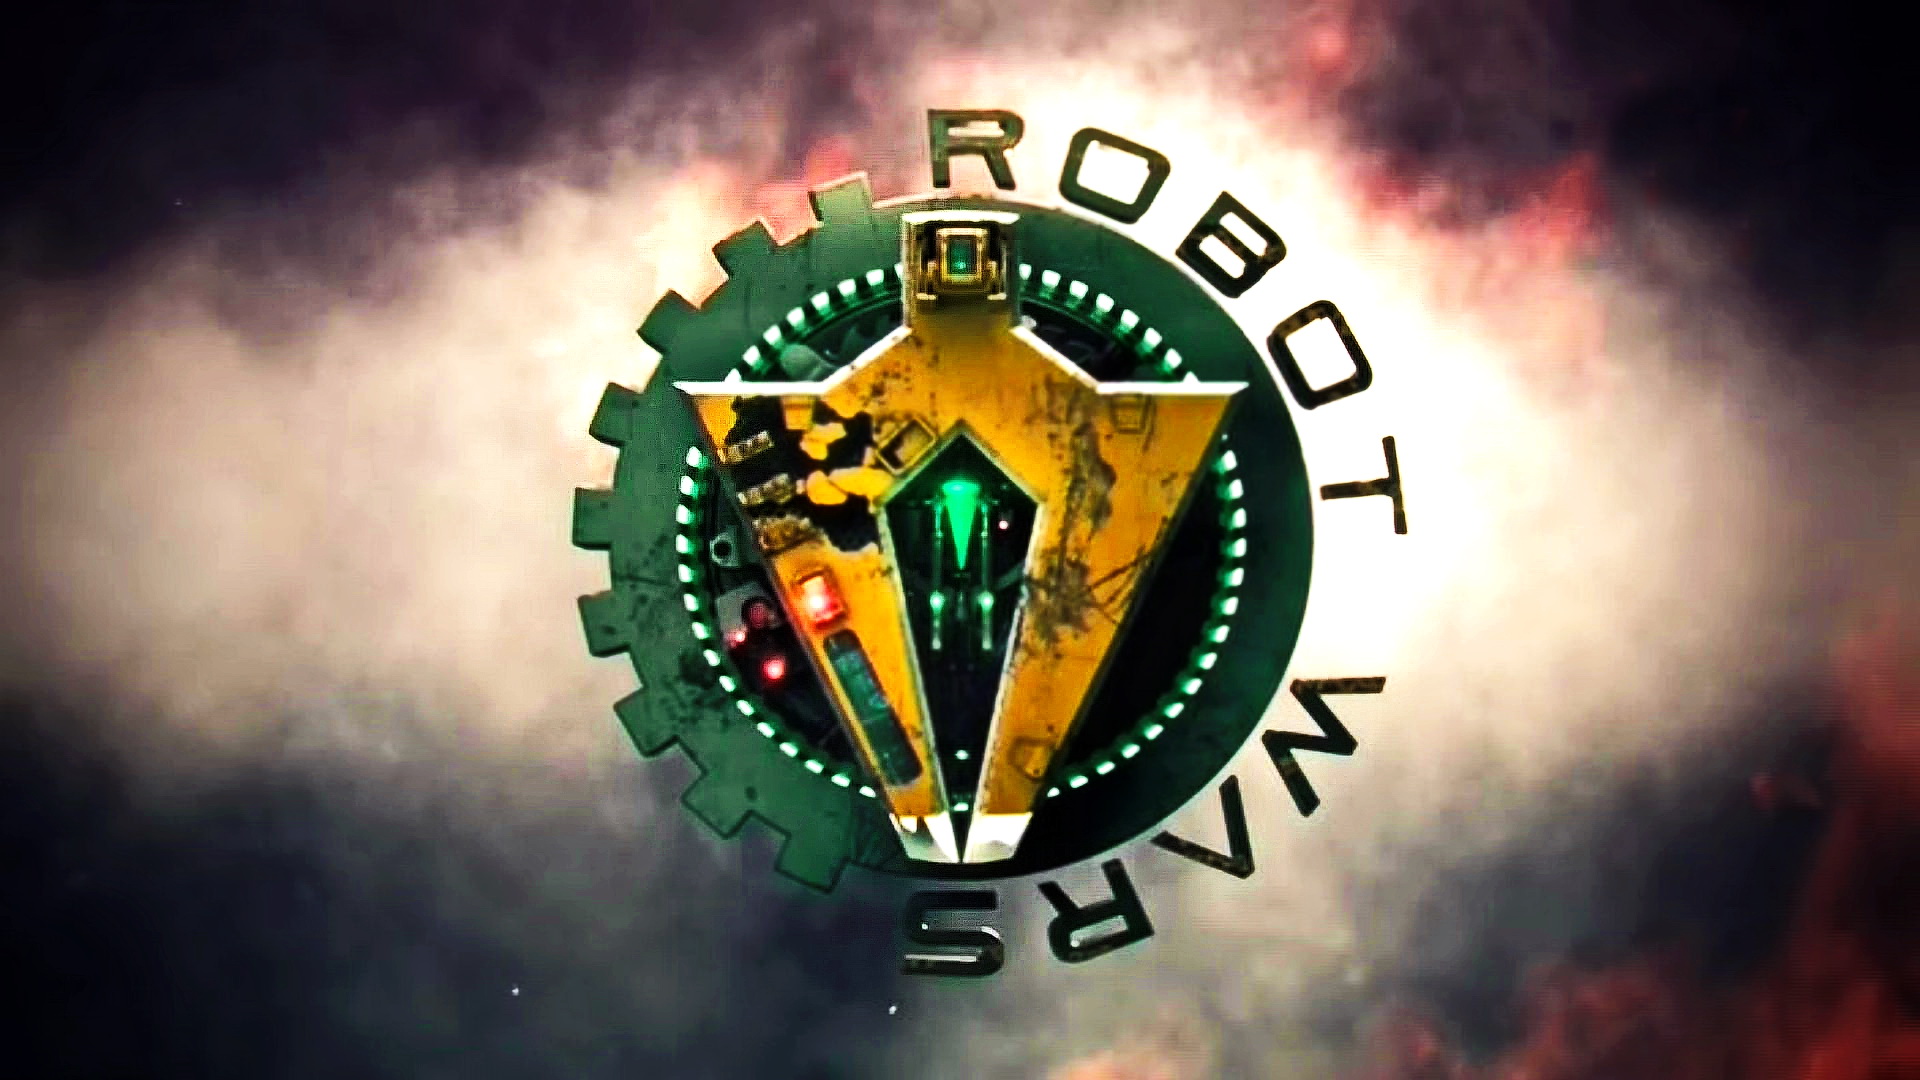 Битвы Роботов 8 сезон 6 серия. Гранд-финал / Robot Wars (2016)